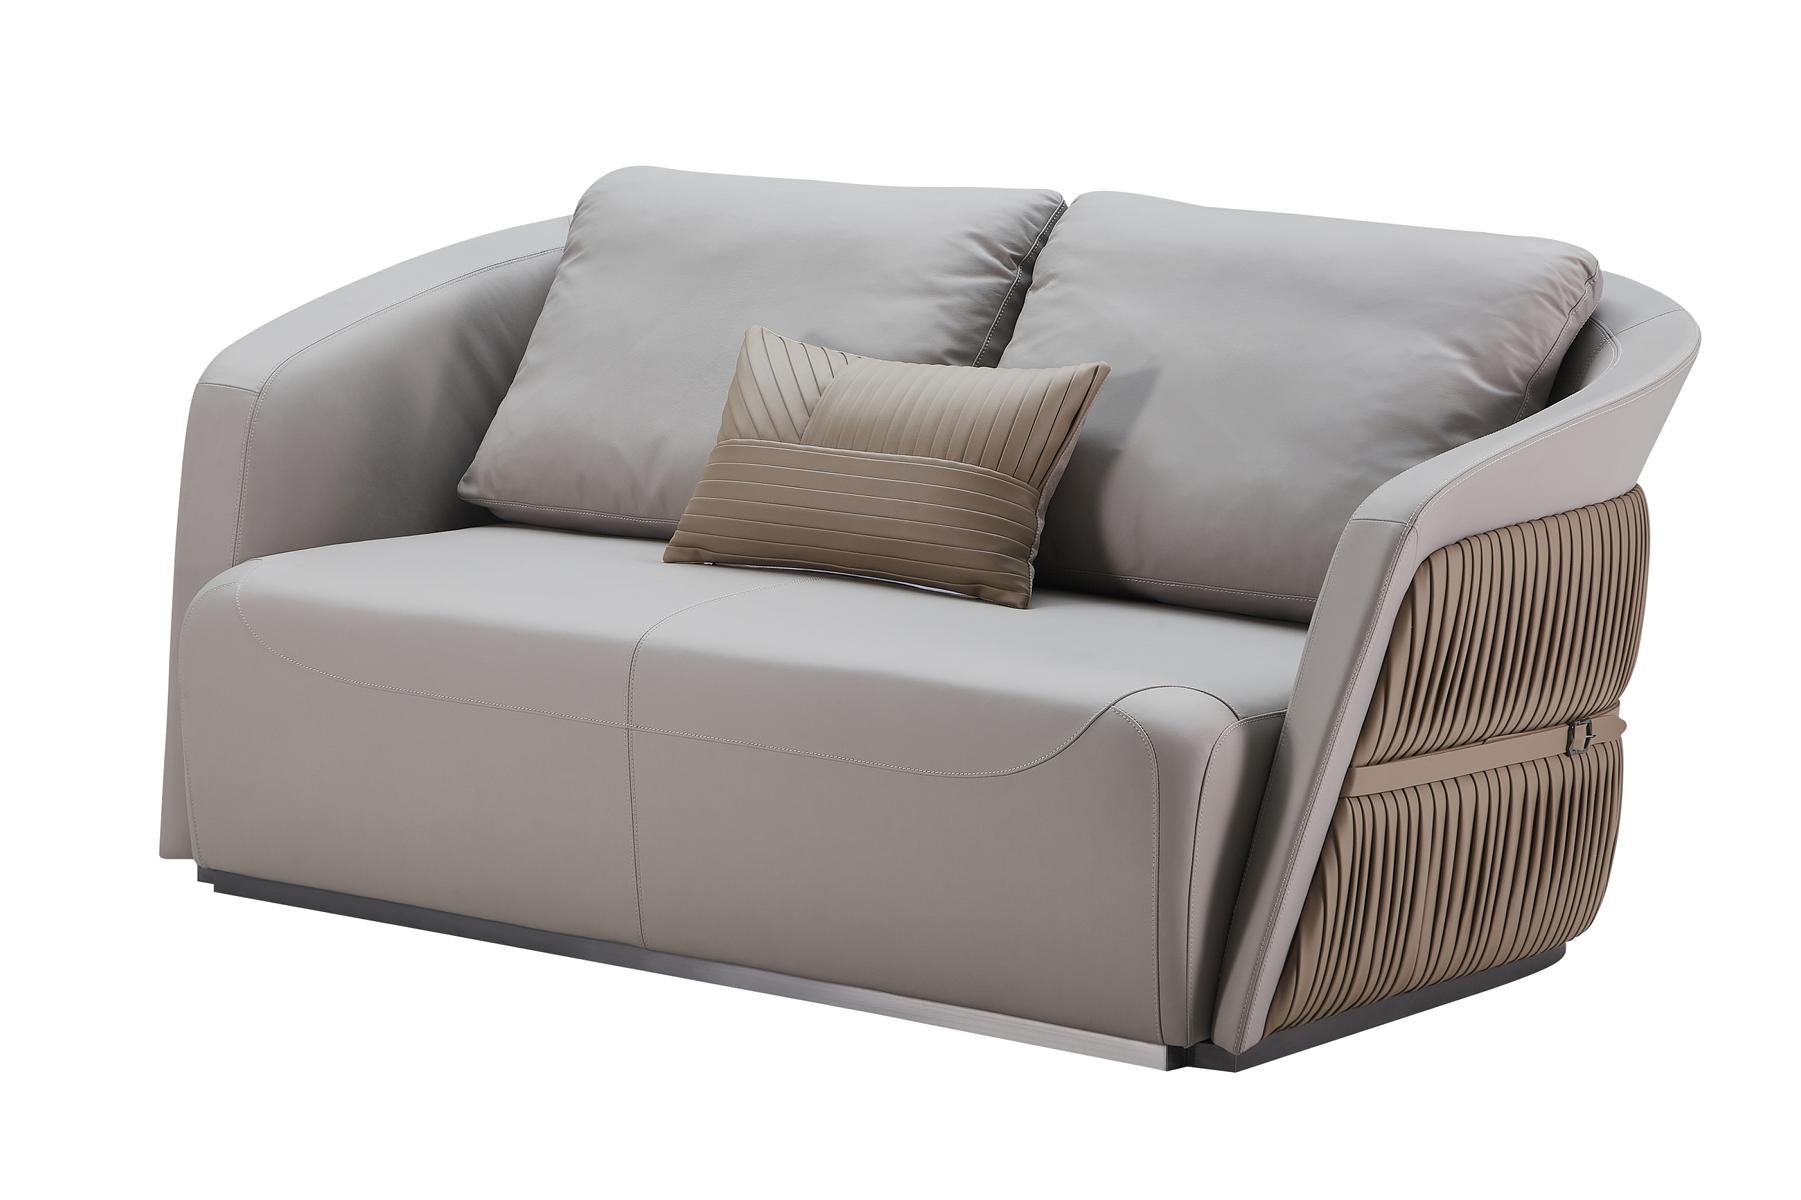 Zweisitzer Couch Couch Polster Sofa 2 Sitzer Textil Couchen Stoff Luxus Möbel